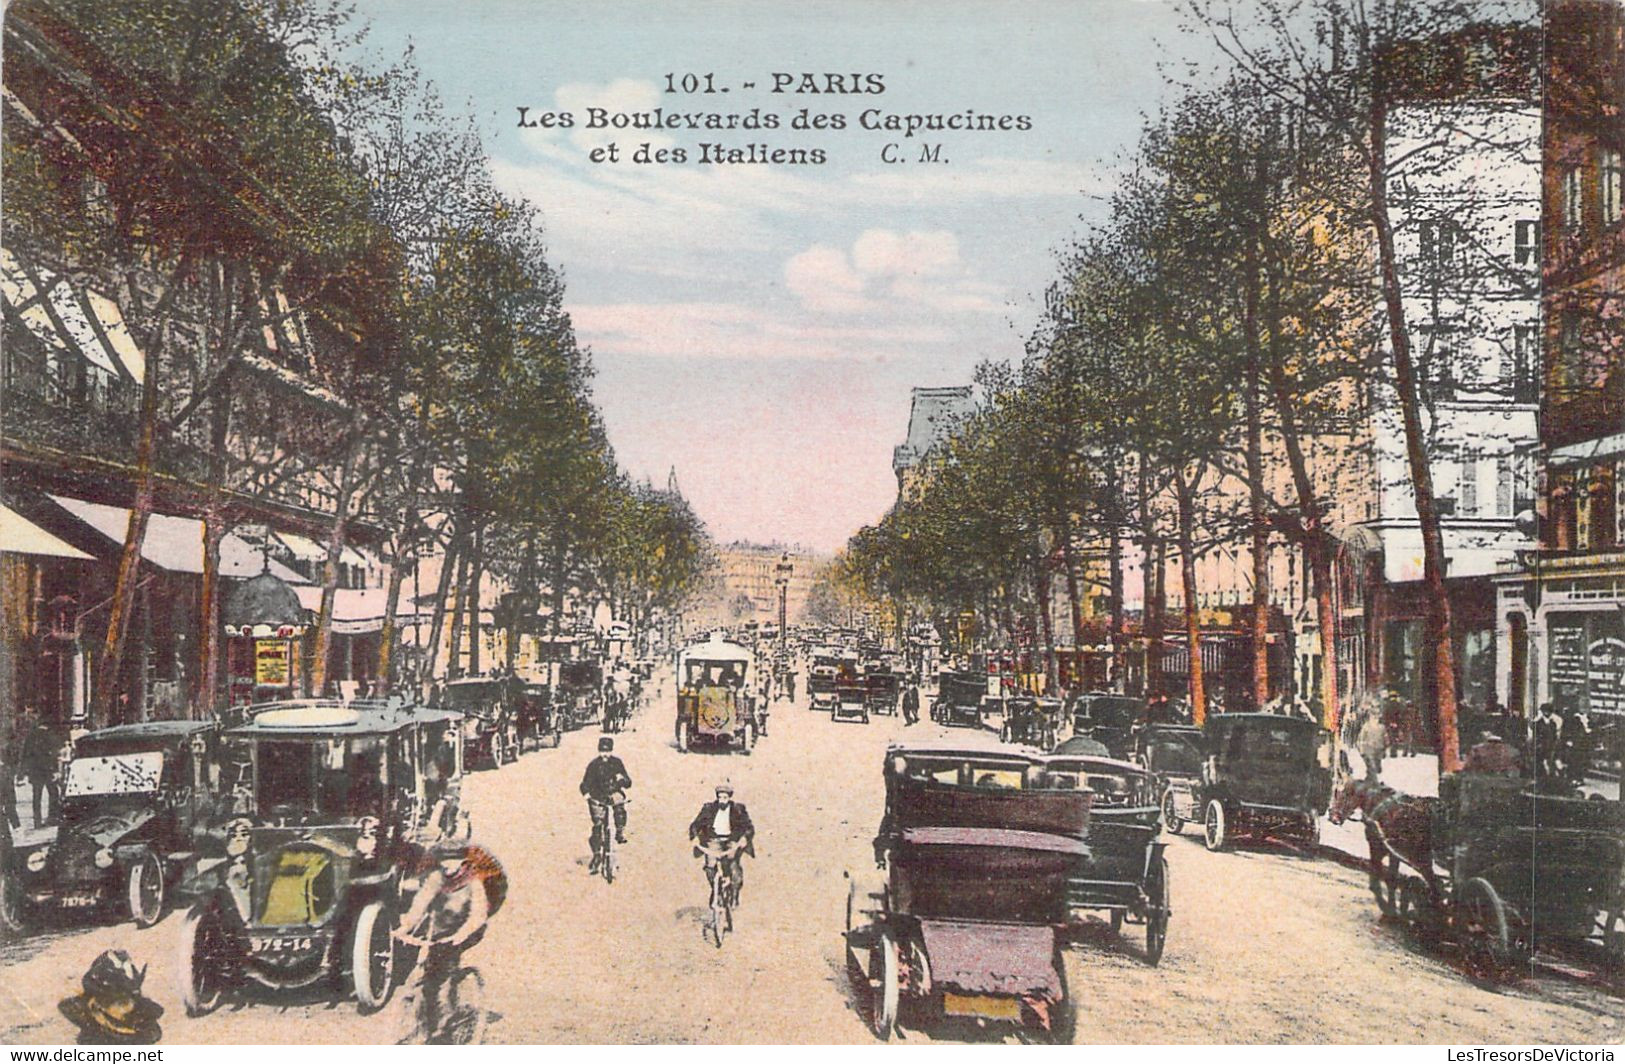 CPA Paris - Lot de 6 cartes des Boulevards de Paris